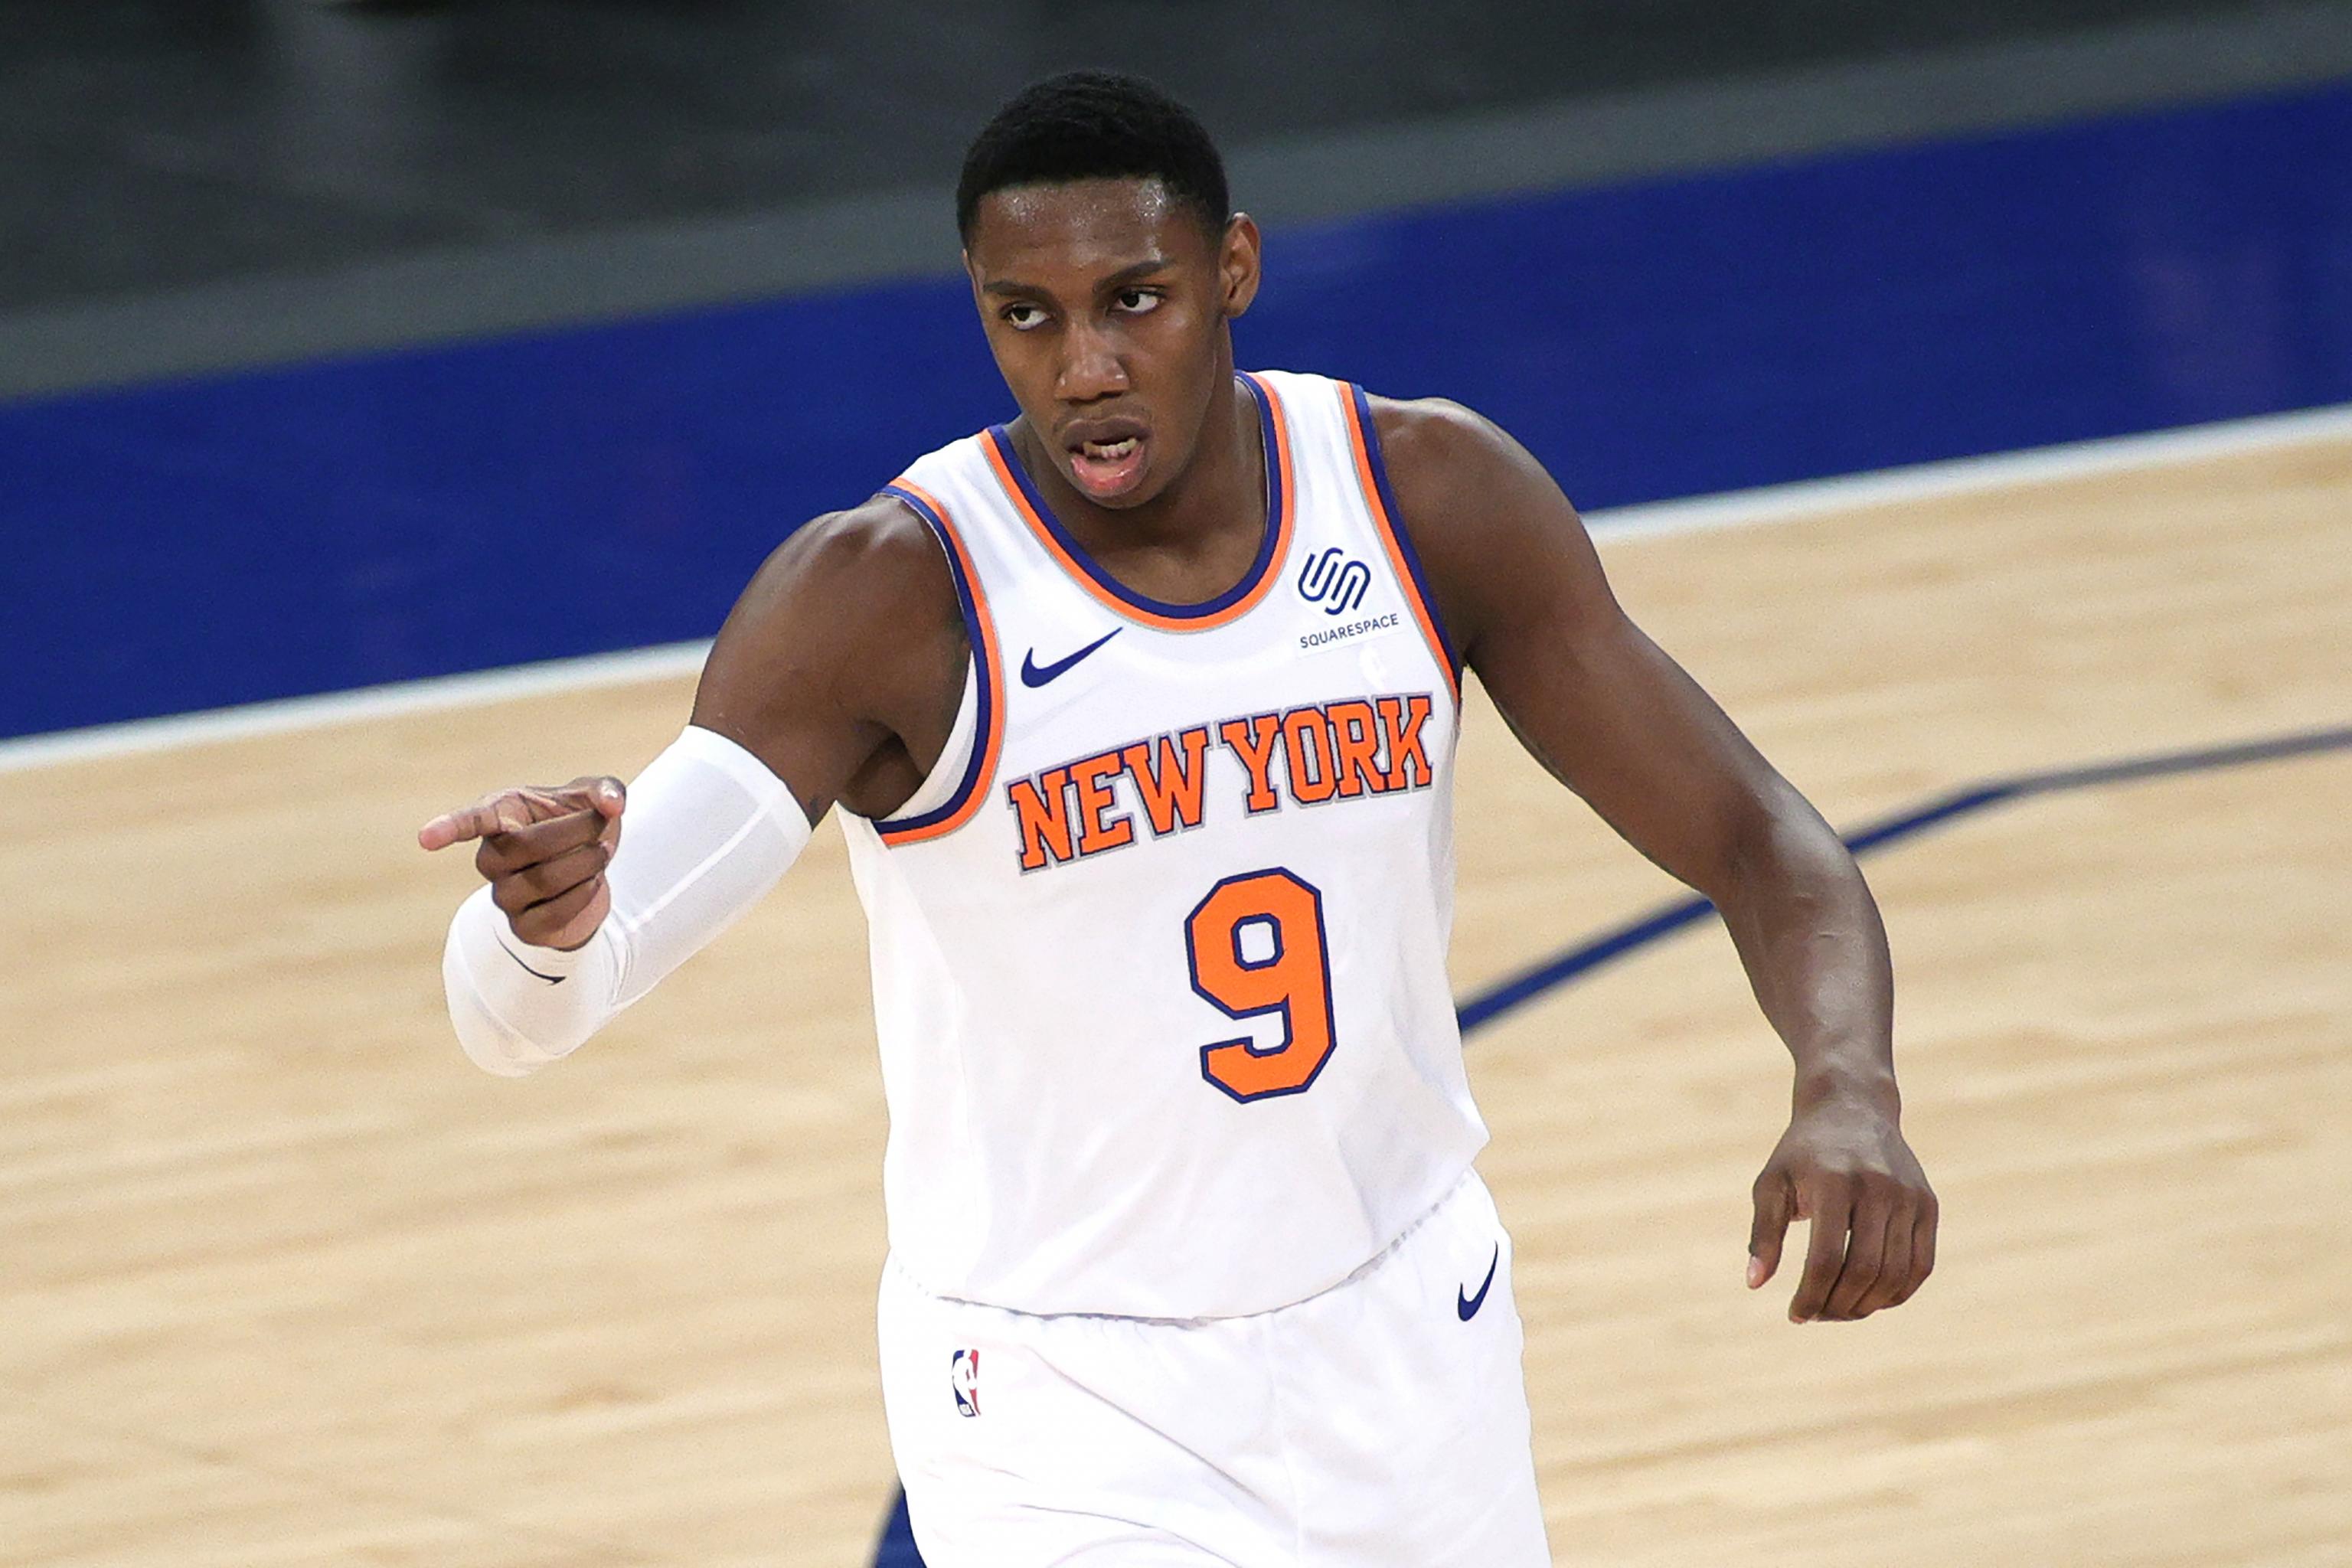 Bleacher Report gets Knicks' RJ Barrett's ranking completely wrong